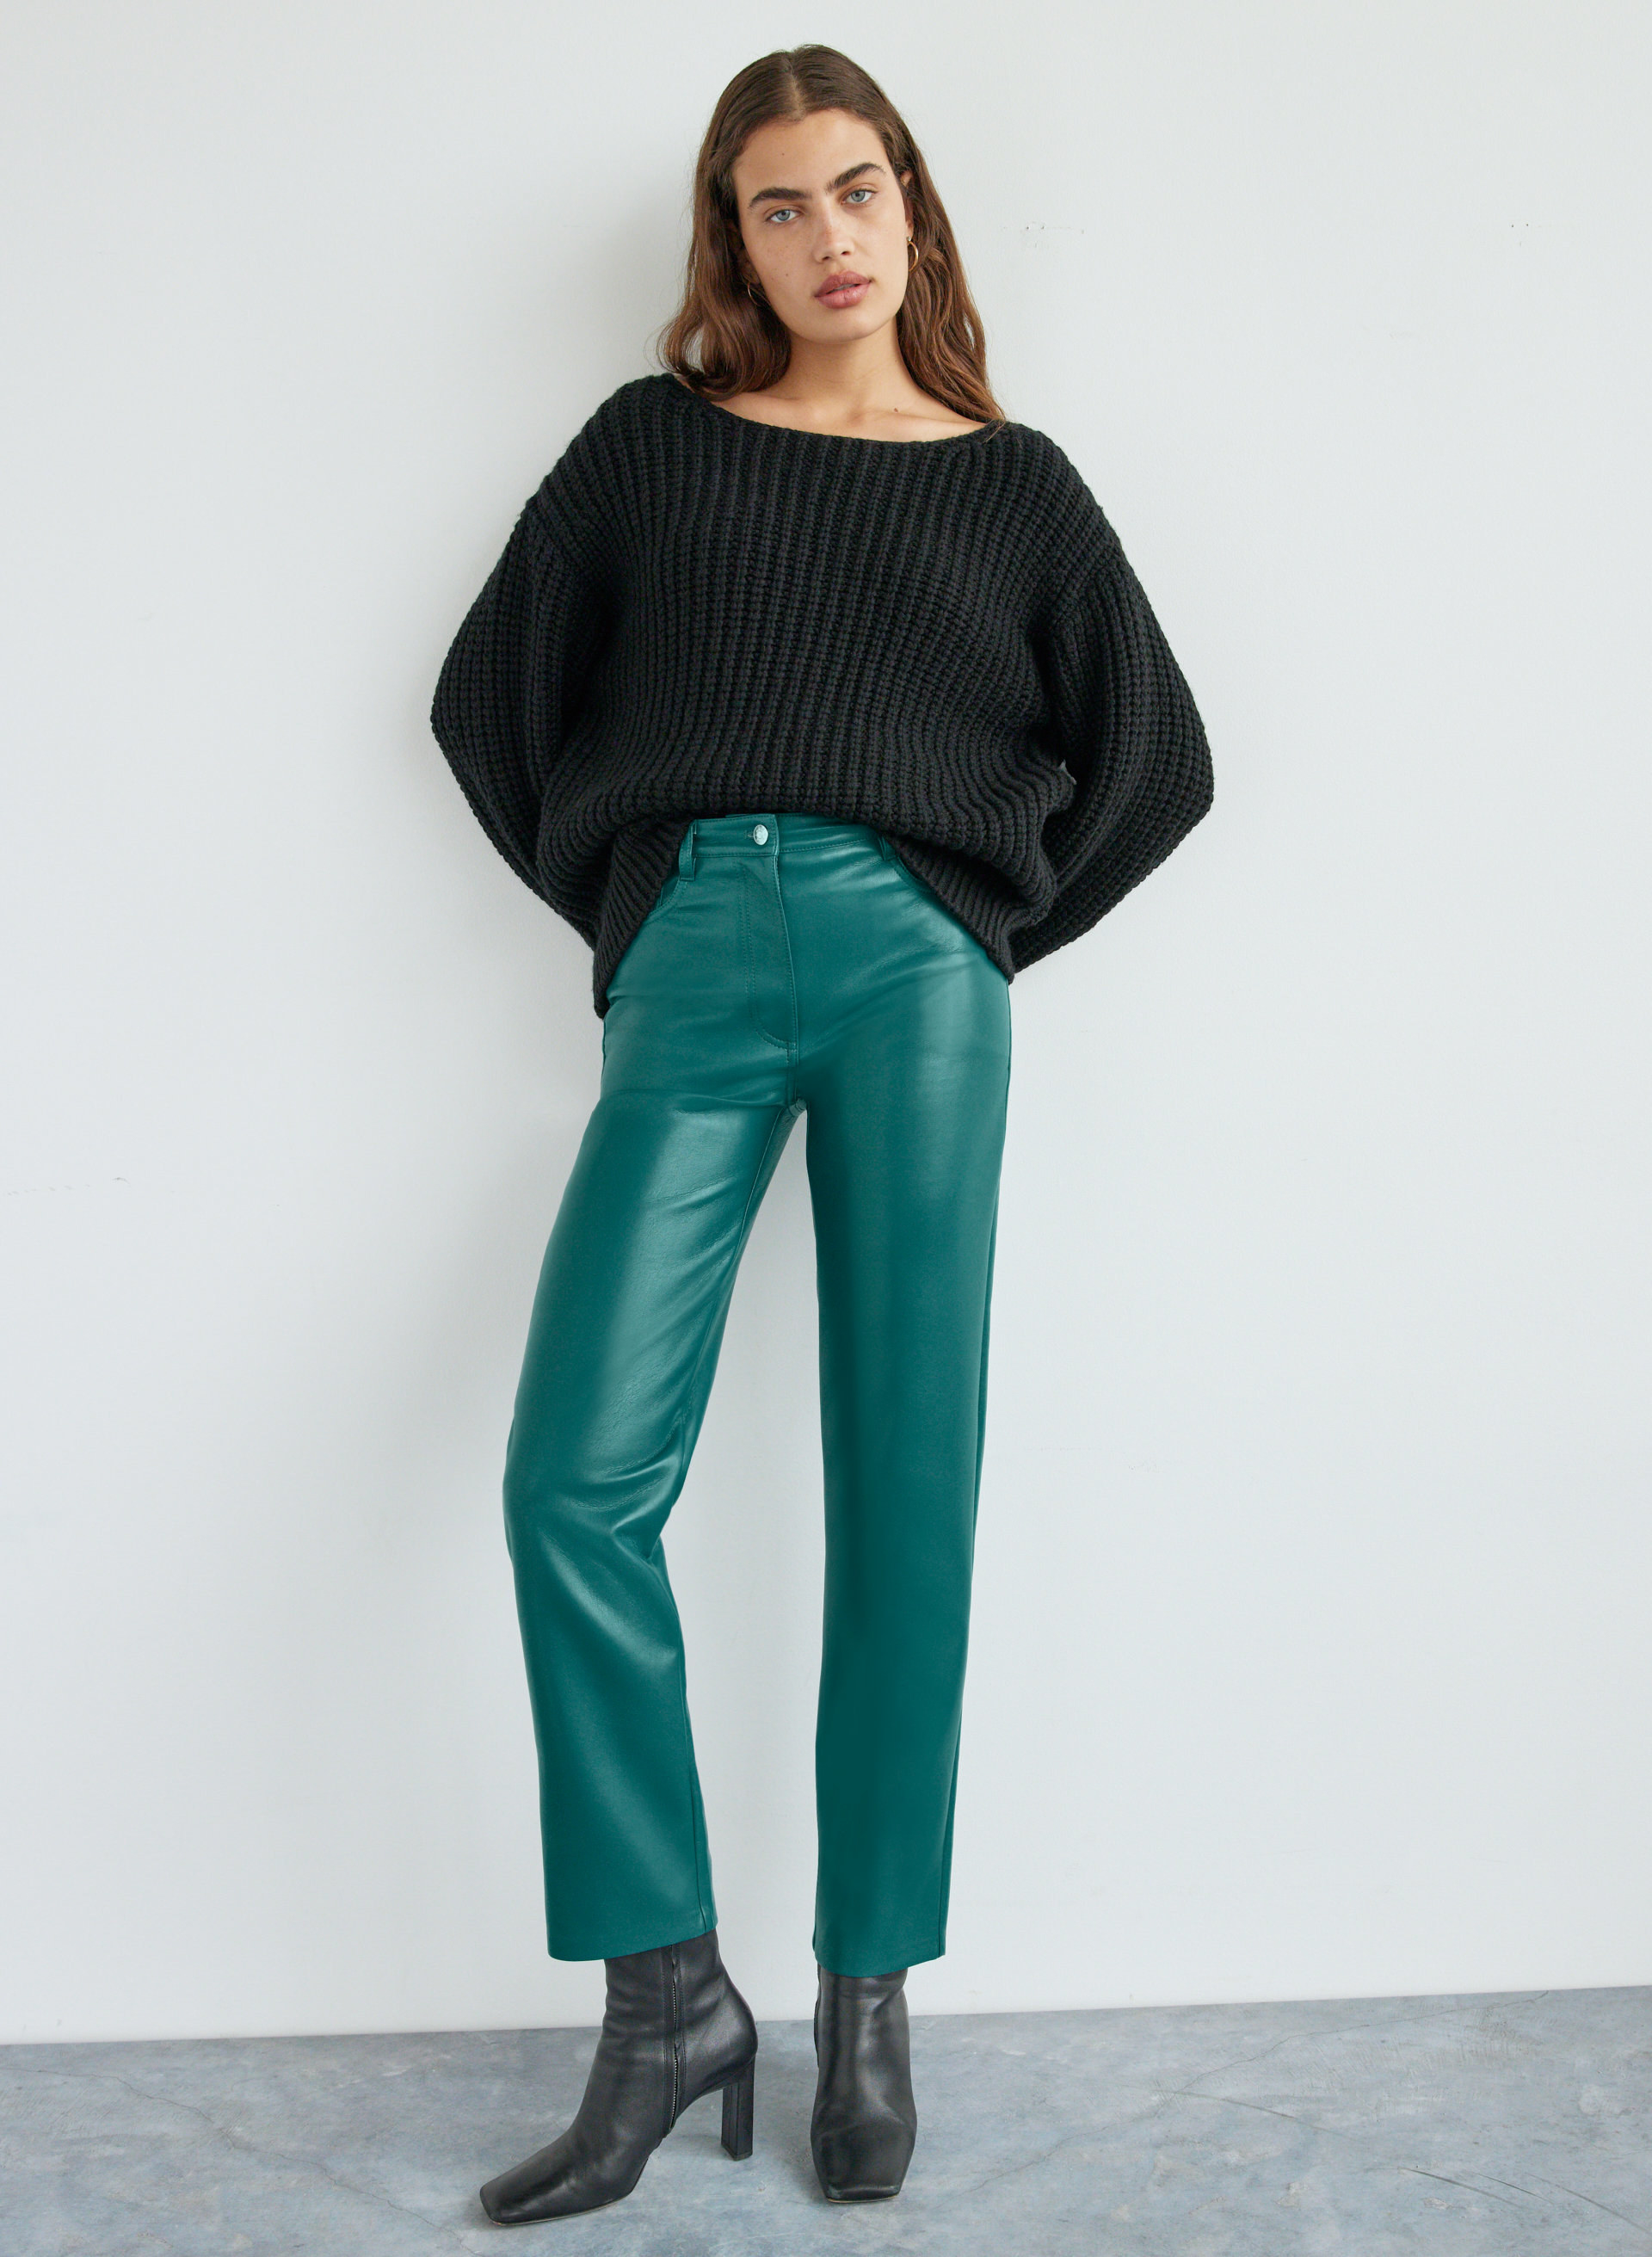 model wearing green pants